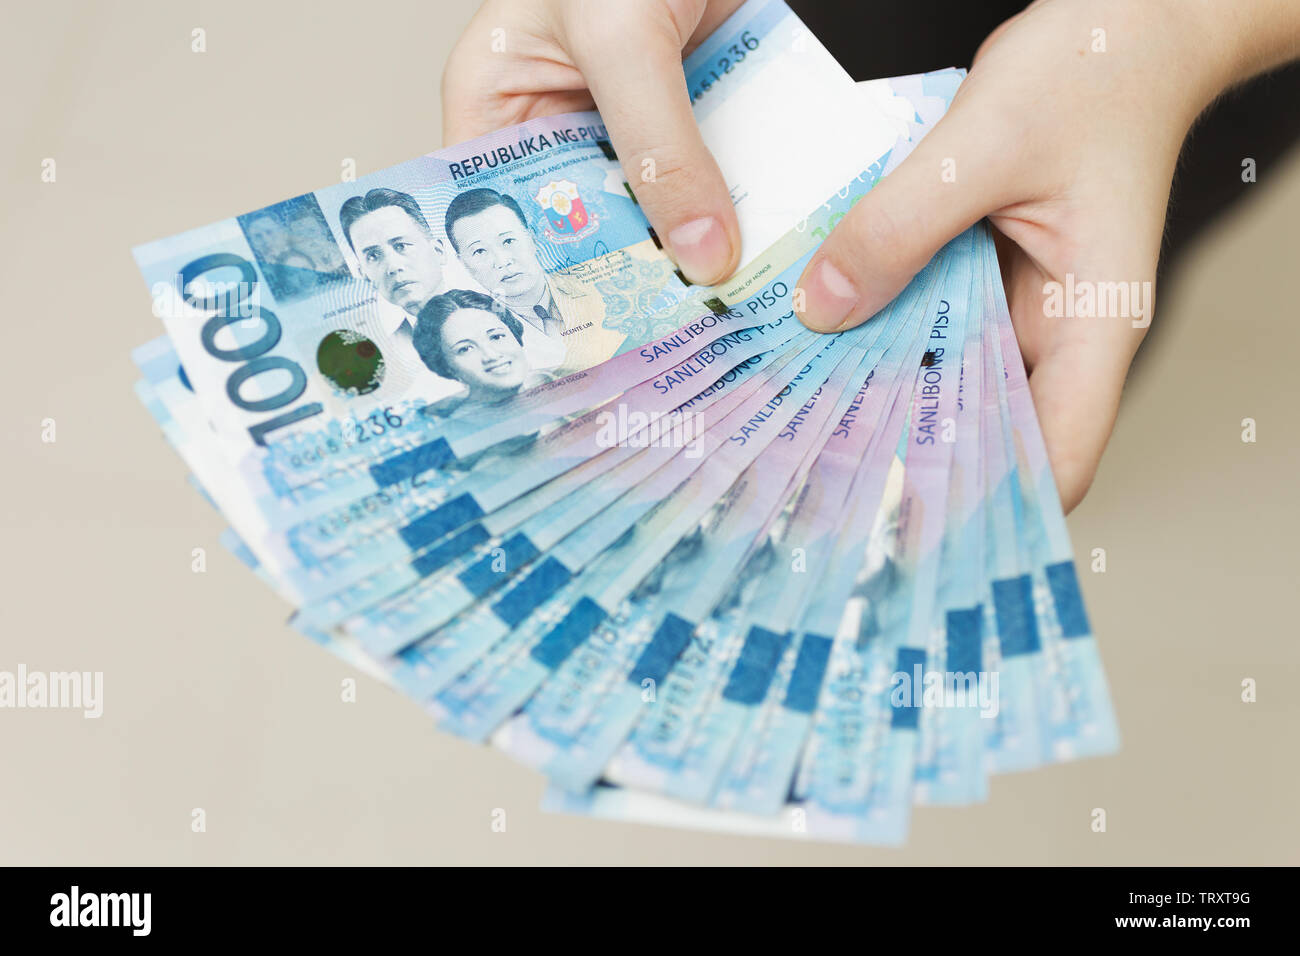 Hände halten Gehalt oder Payment Bundle von Bargeld von tausend philippinischen Peso, als wenn sein Reich. Zeigen Sie, Rechnungen bezahlen oder Bestechung geben. Stockfoto